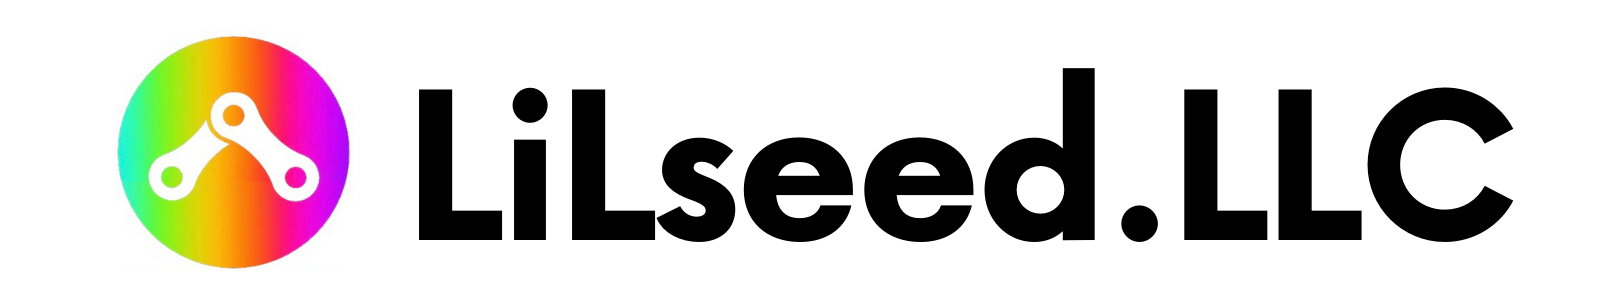 LiLseed合同会社(LiLseed.LLC)